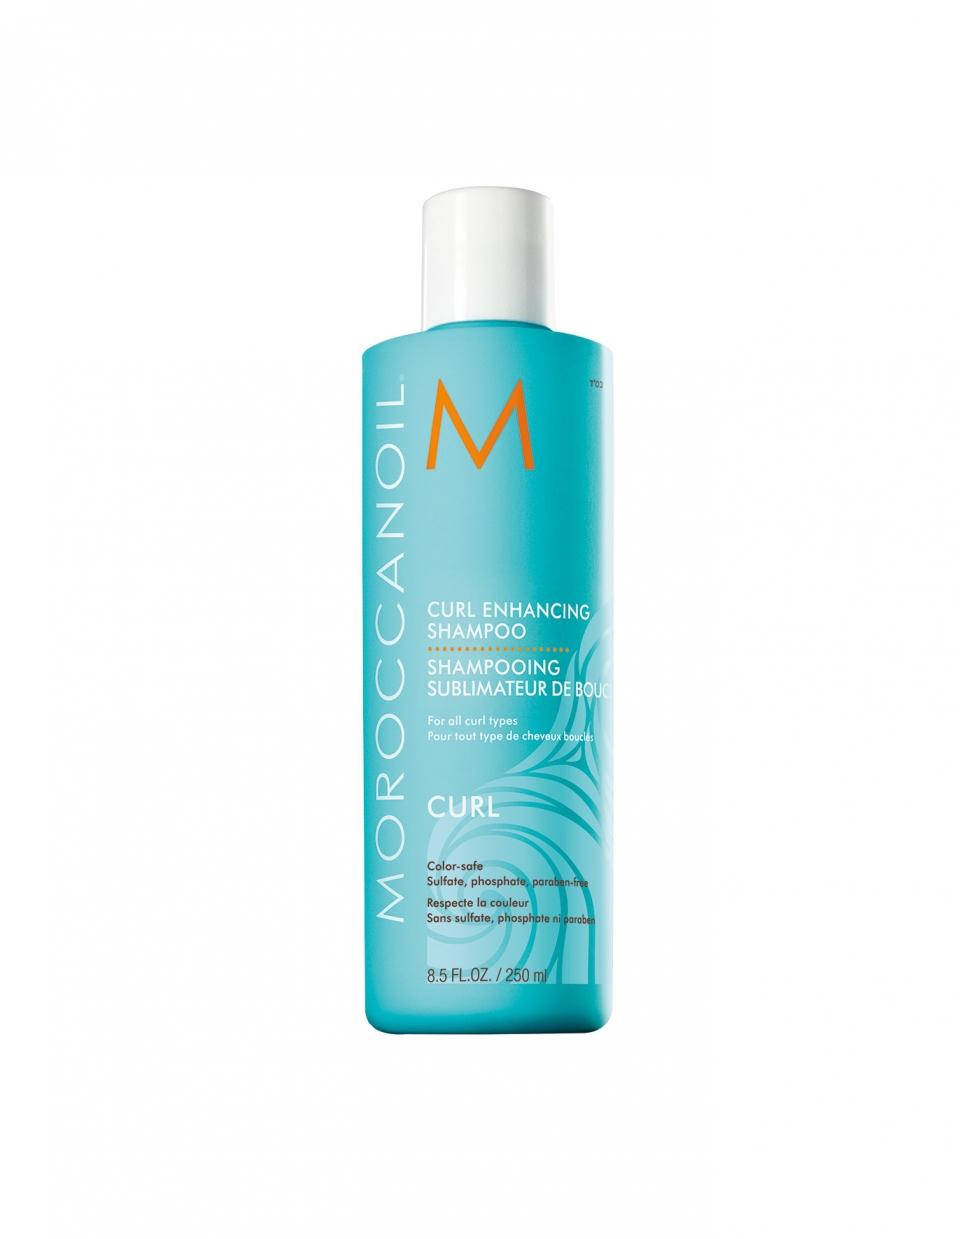 컬인핸싱샴푸(curl enhancing shampoo)_250ml